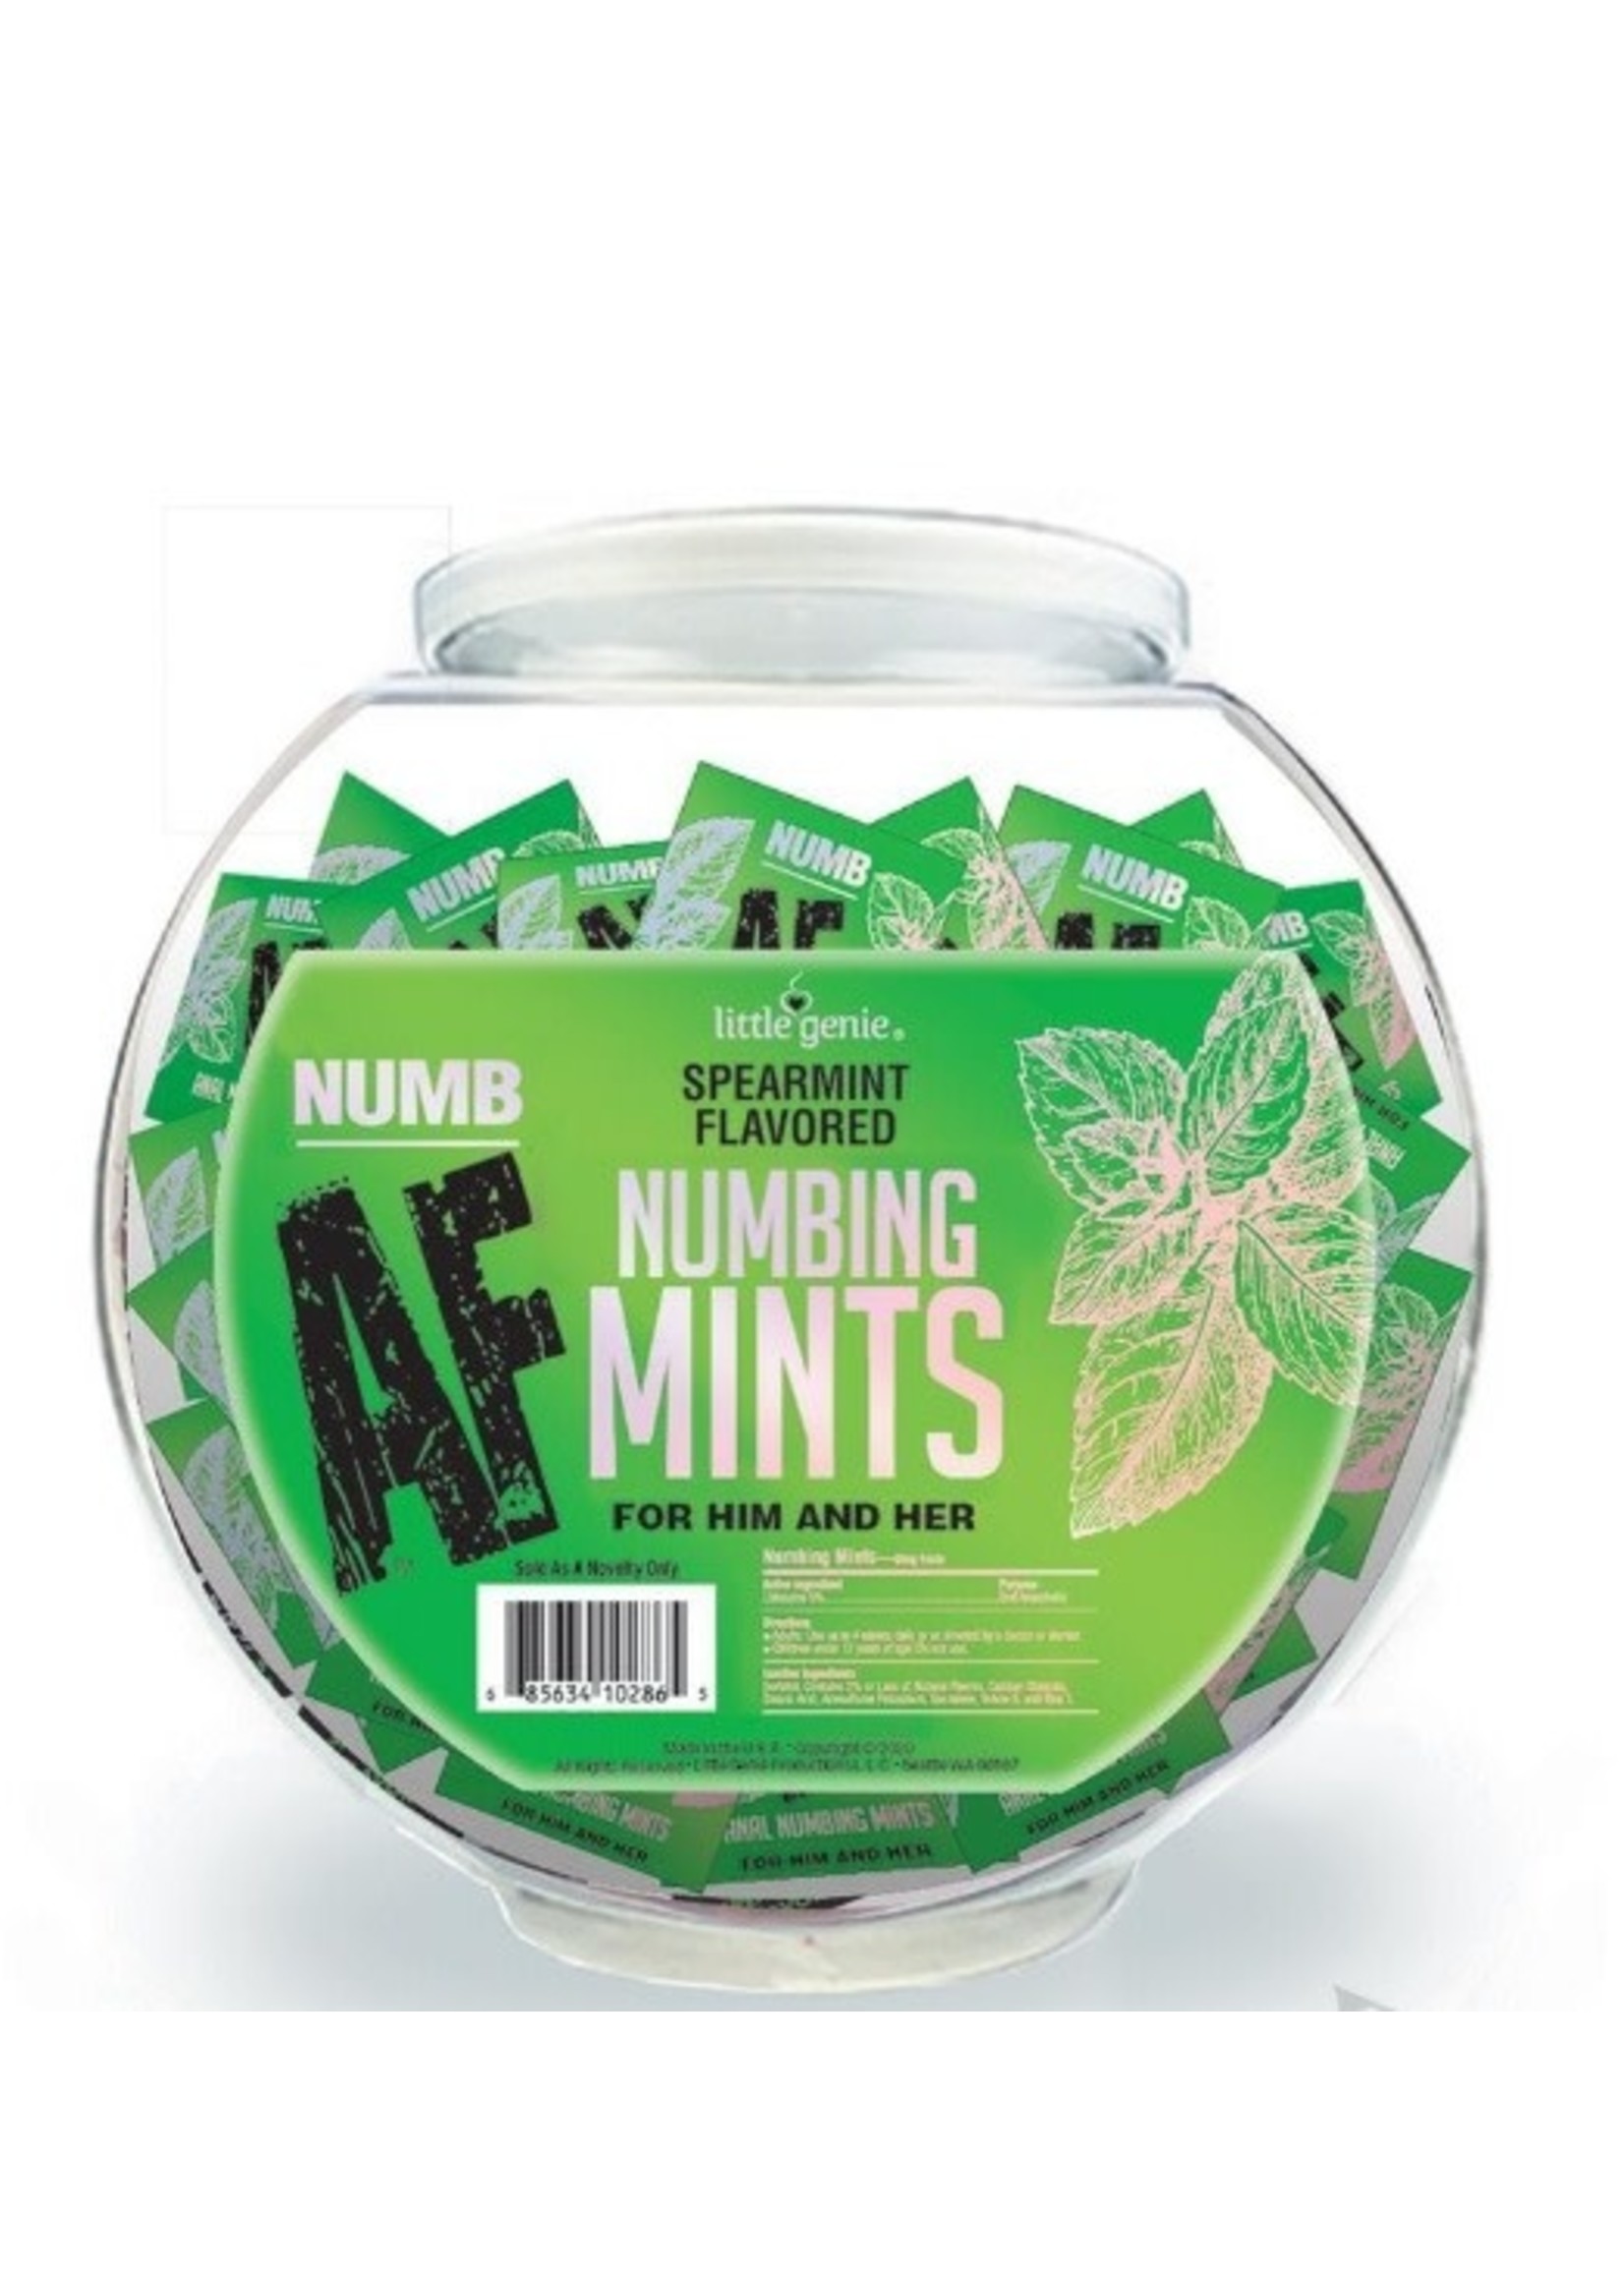 Numb AF Mints